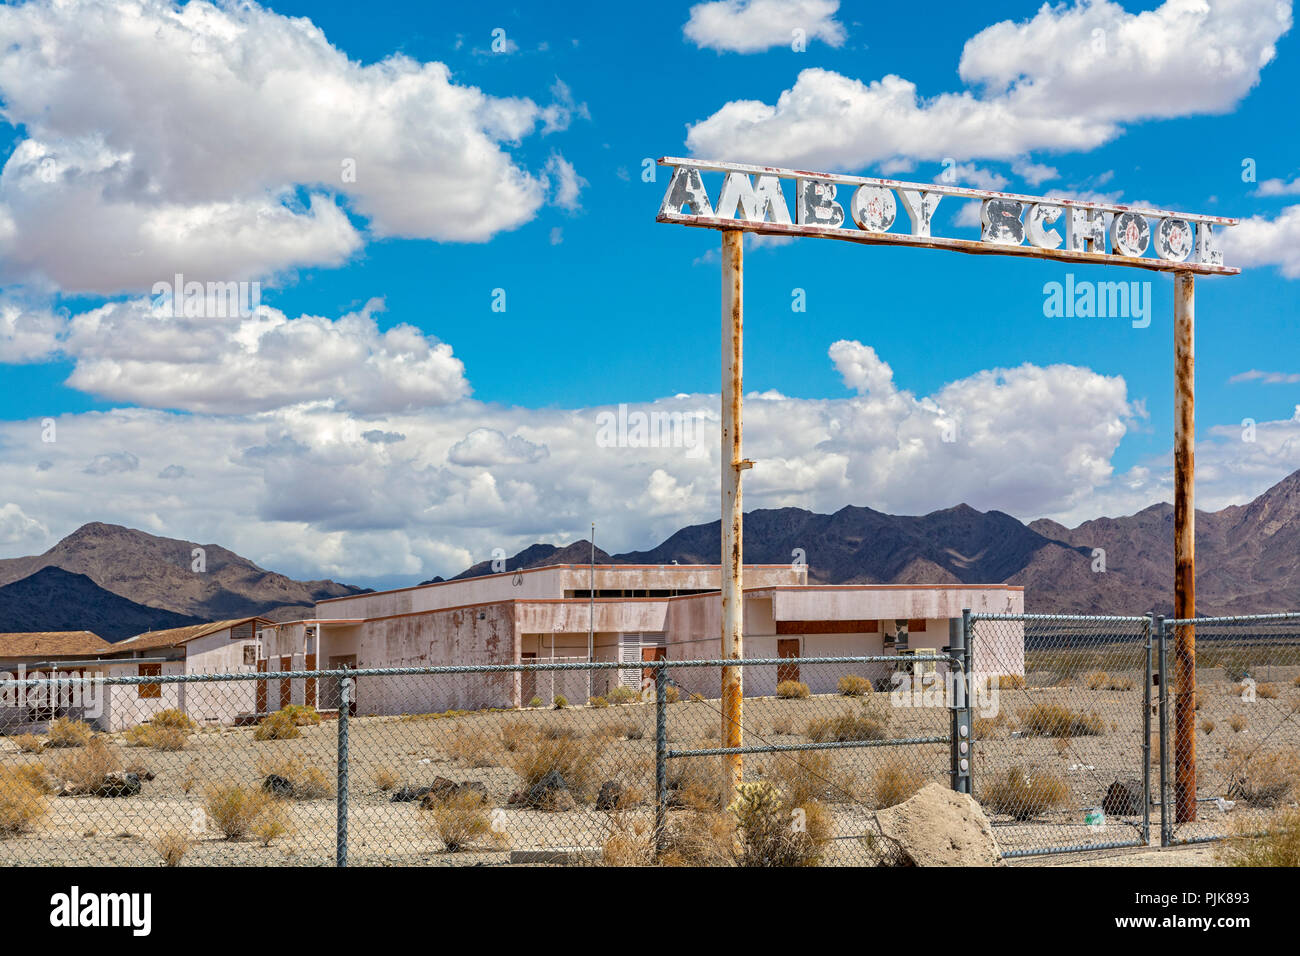 California, Deserto Mojave, San Bernardino County, storica Route 66, Amboy, scuola abbandonata Foto Stock